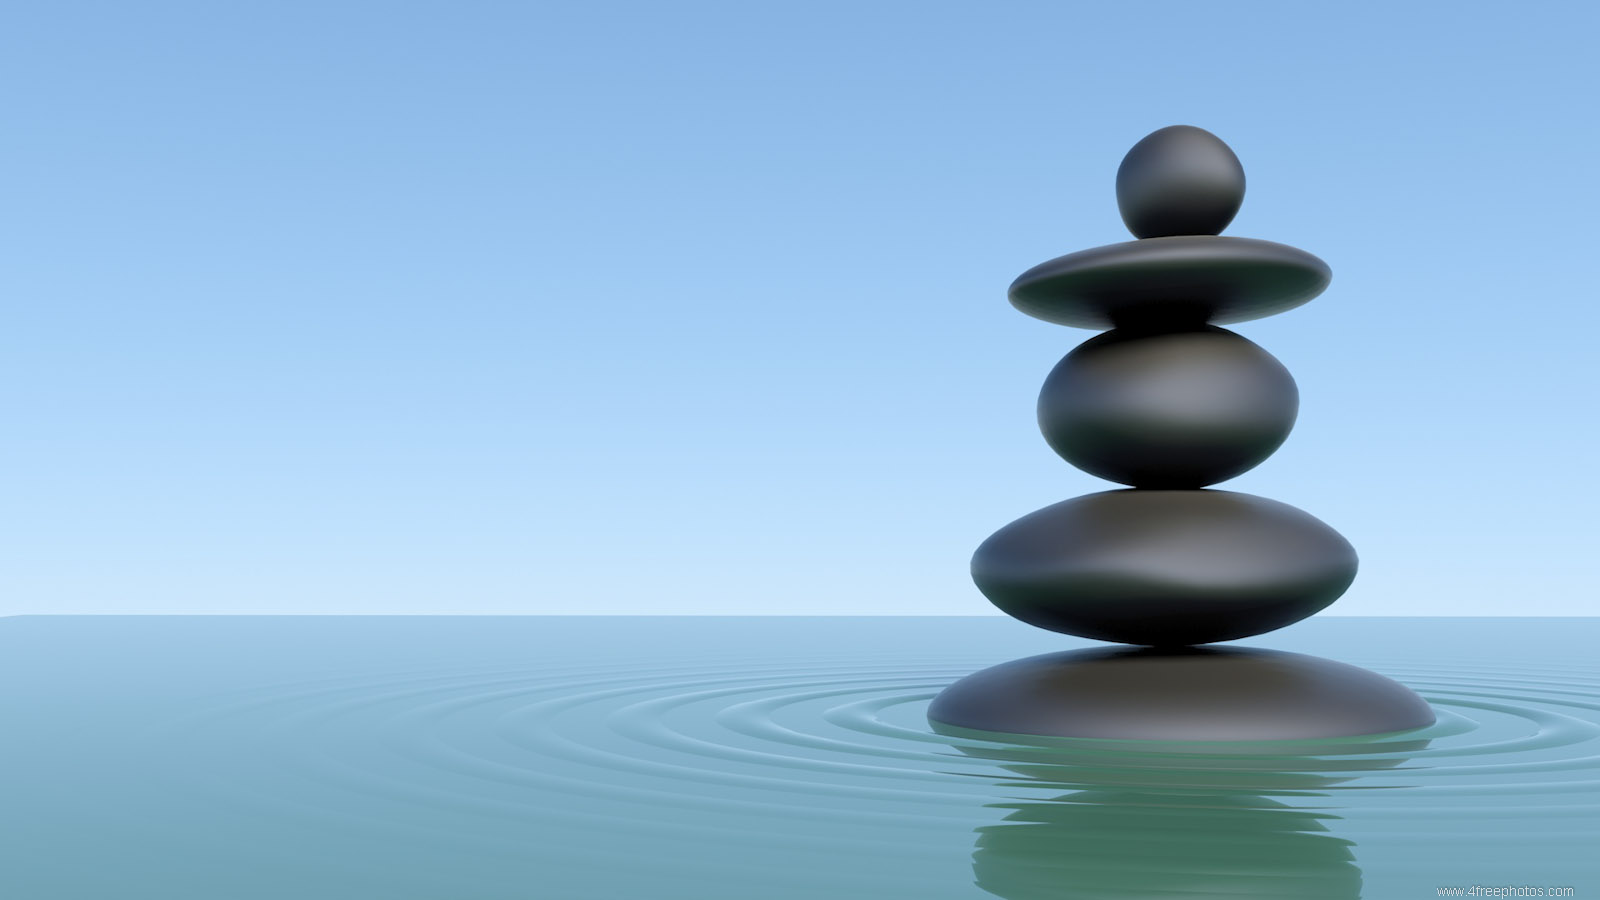 Zen stones piled in water